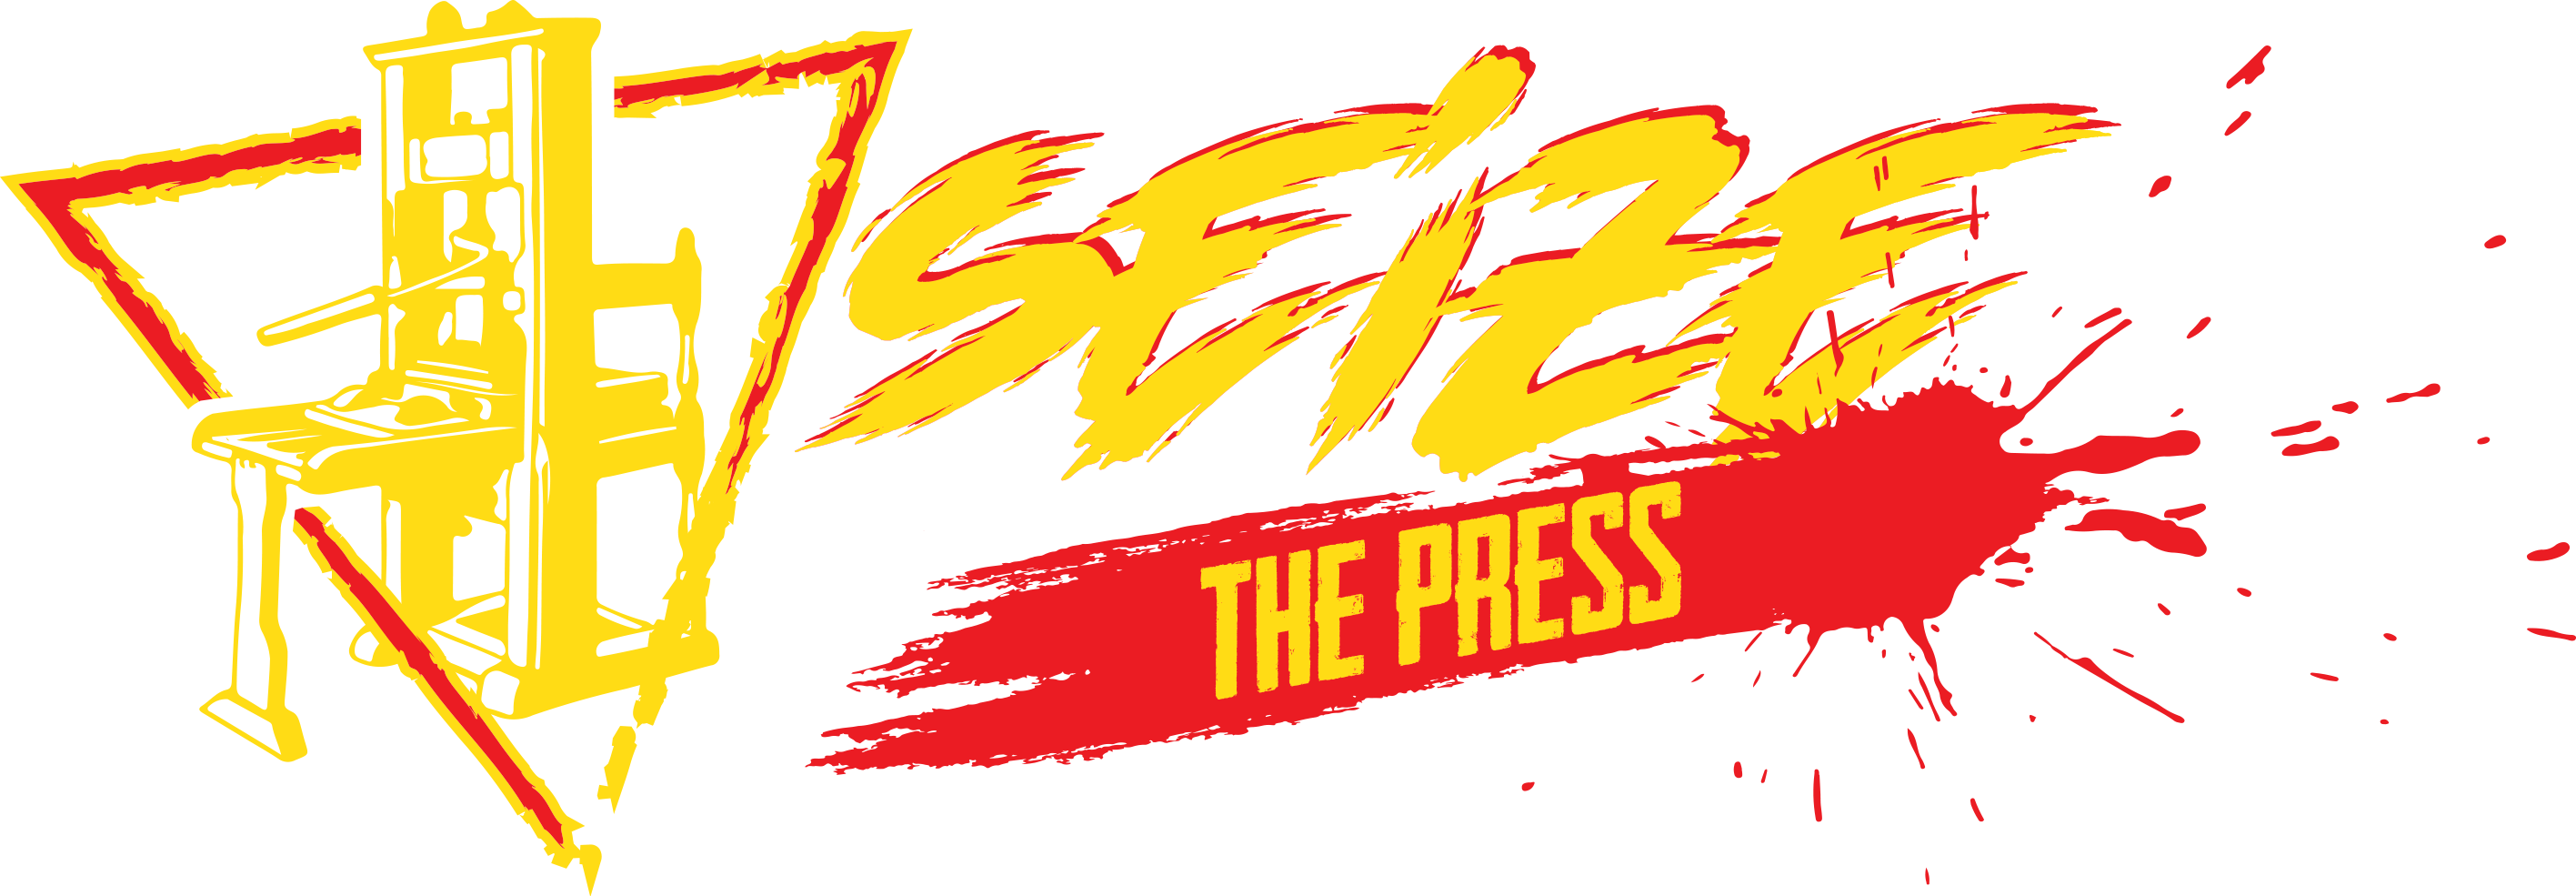 Seize The Press